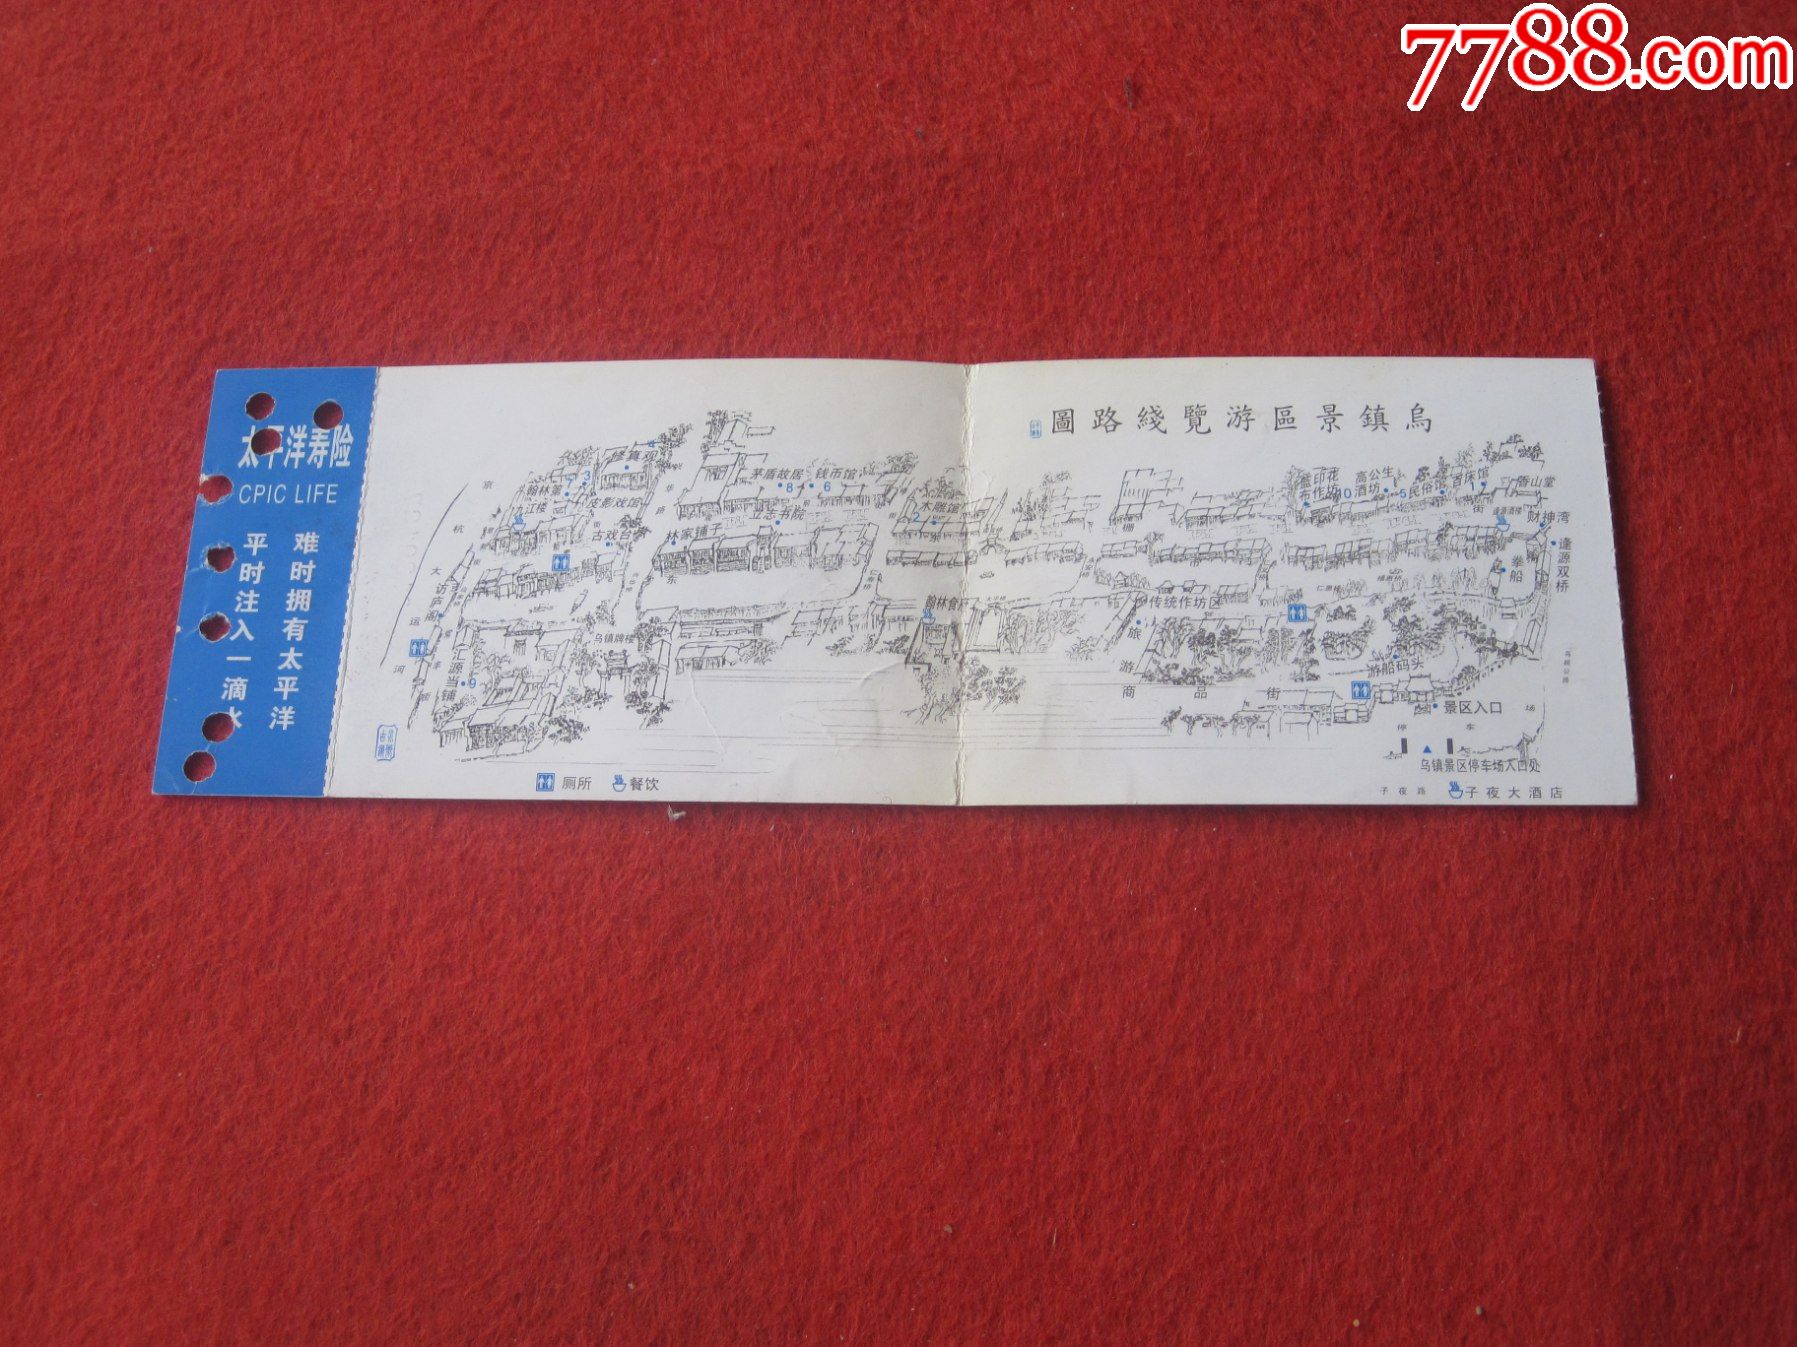 中国乌镇旅游门票(票价:60元)